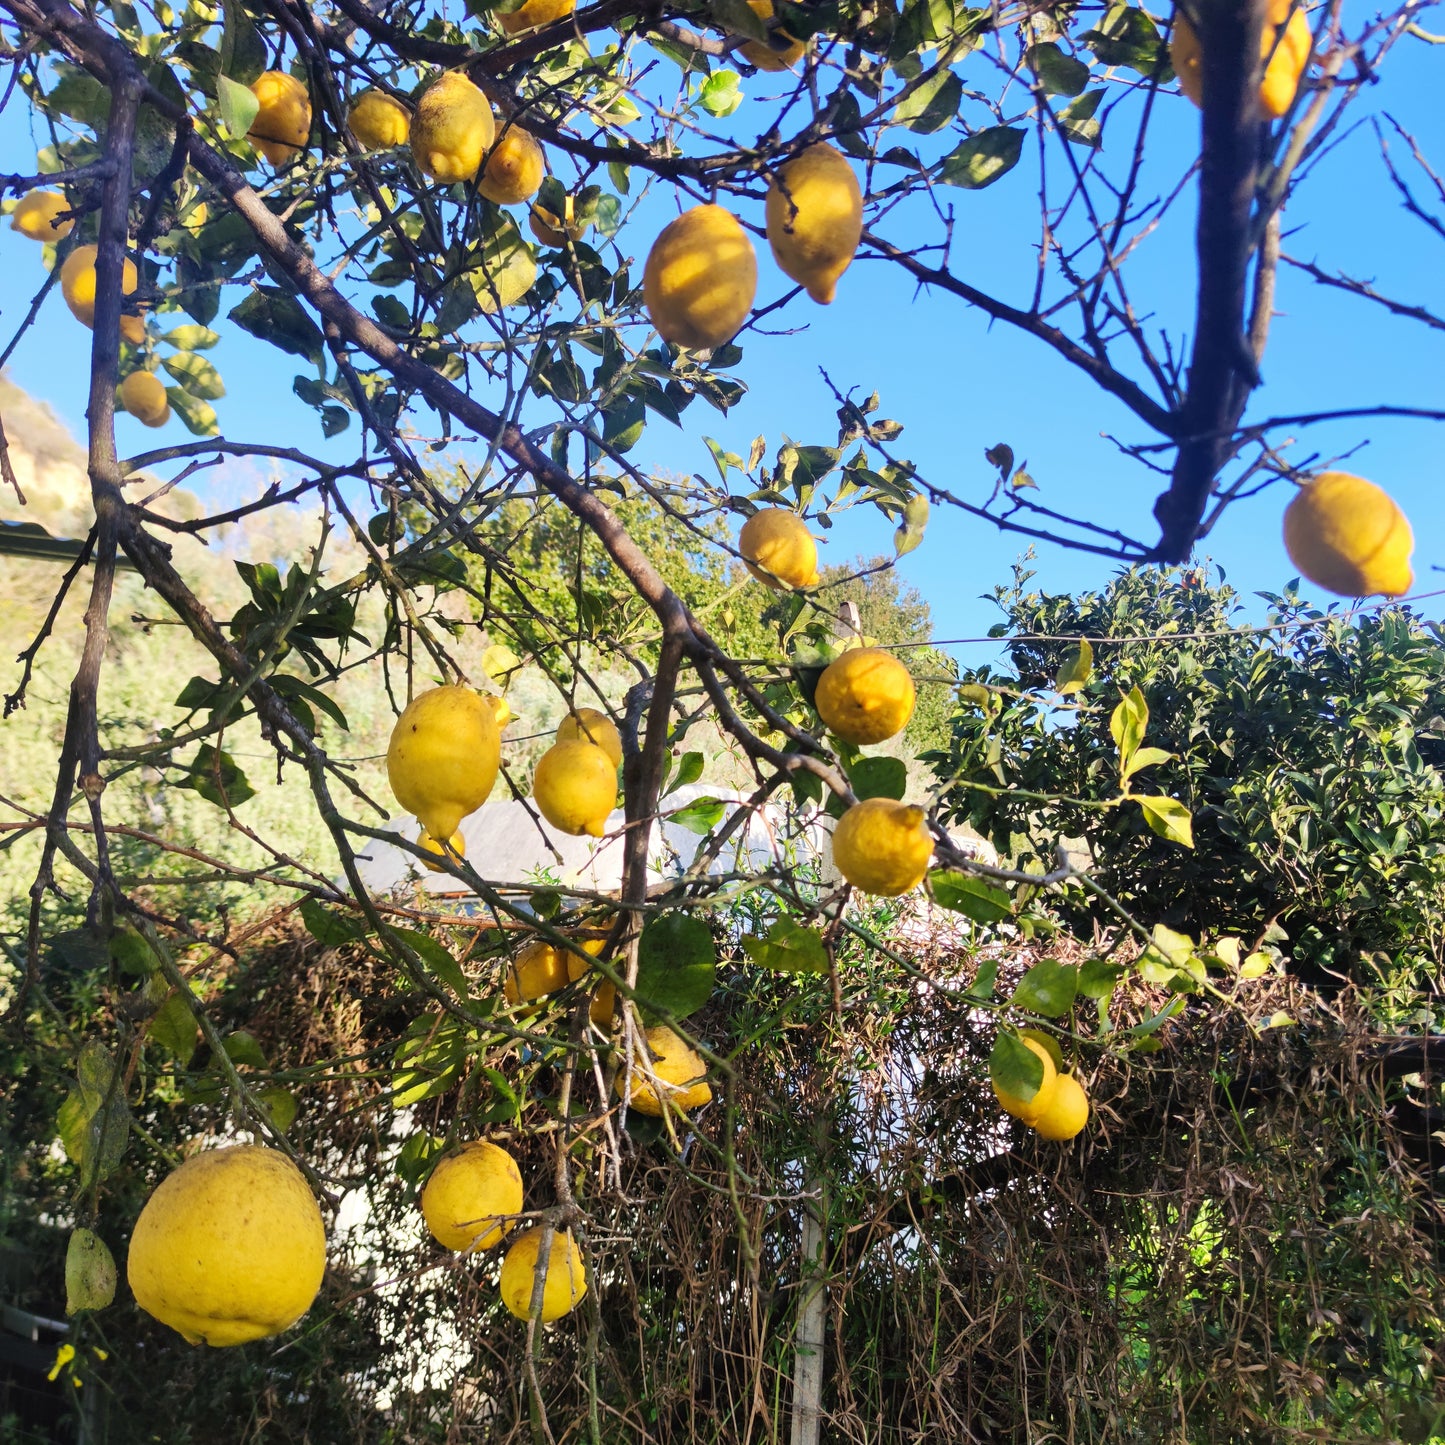 Untreated Sardinian lemons grown naturally, Sennori countryside (SS)